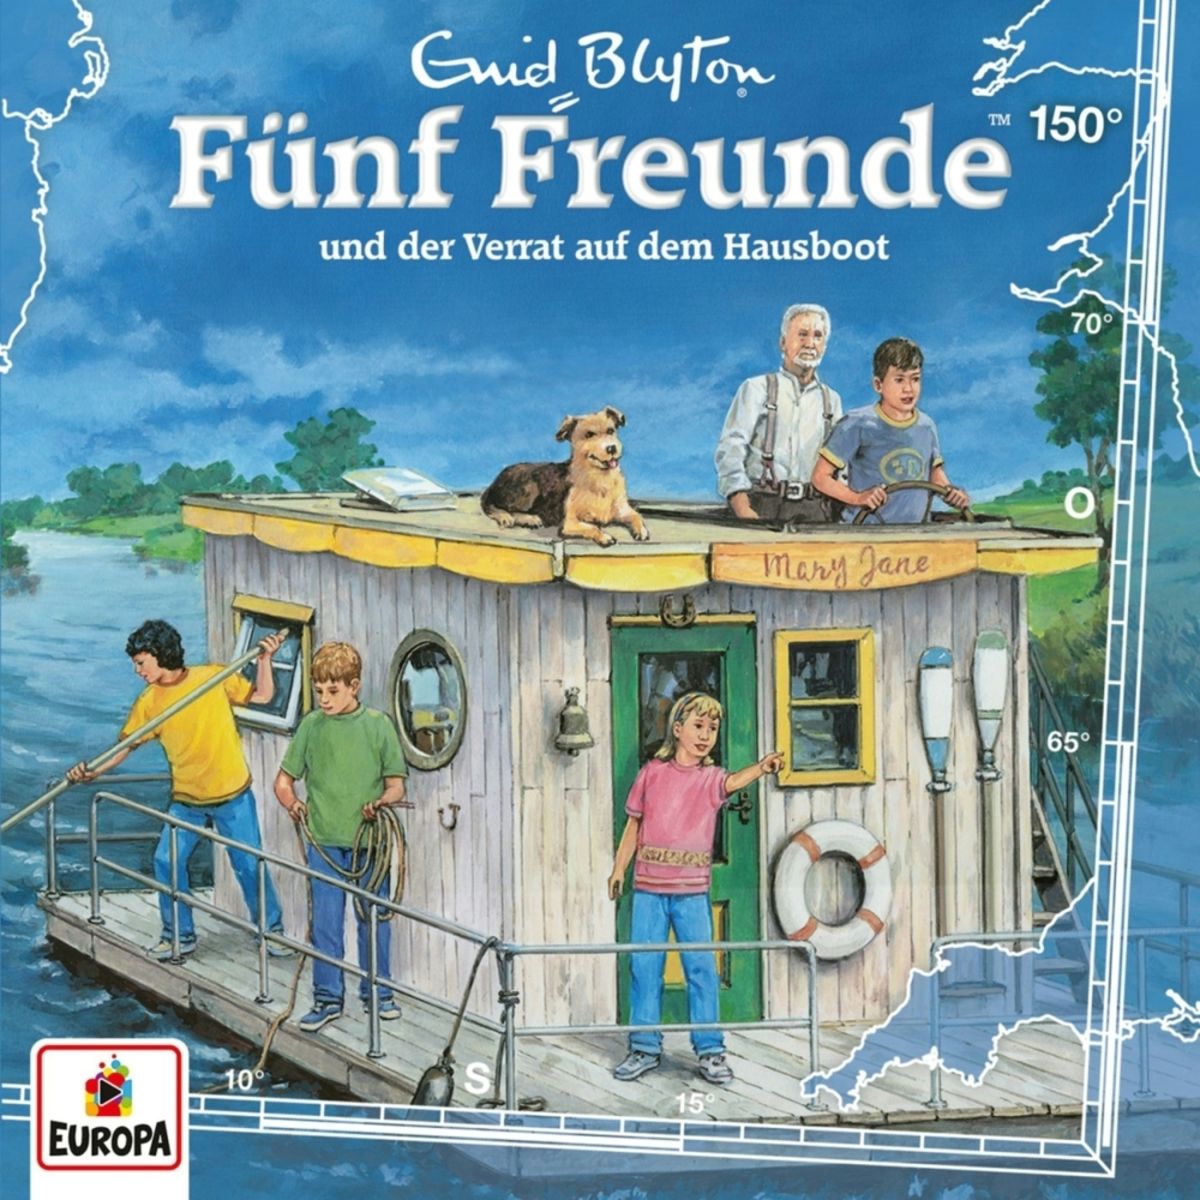 Hörbuch Verrat 150: Hausboot\' von Freunde auf - der und dem \'Enid Blyton\' Fünf